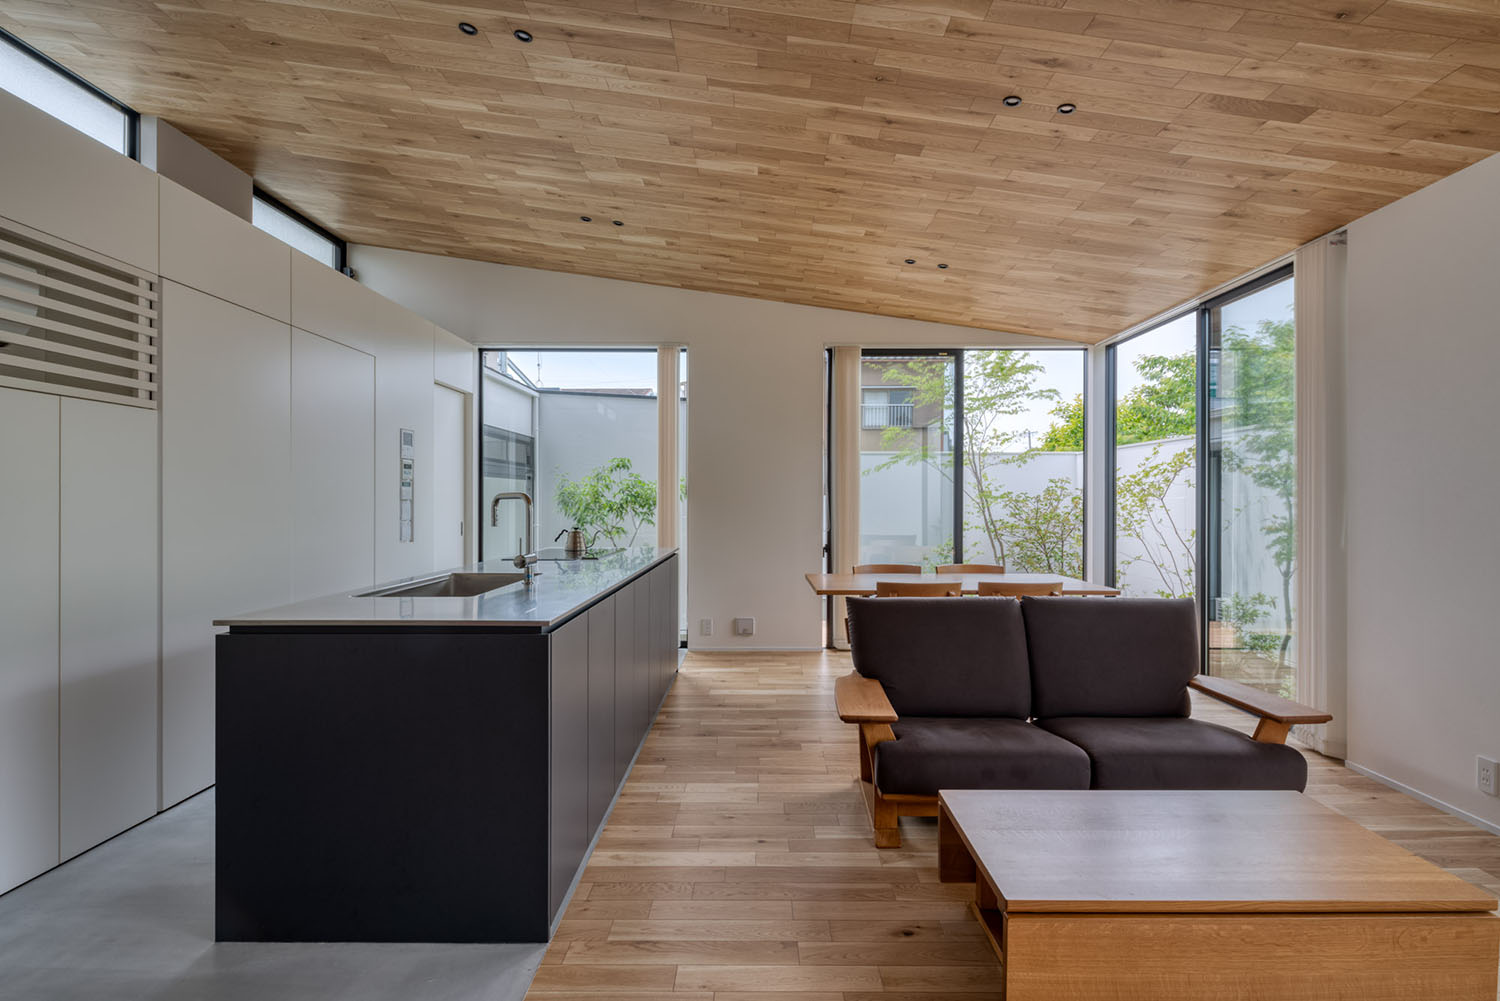 天井や床に木材を使用した空間に黒いアイランドキッチンがある様子・デザイン住宅